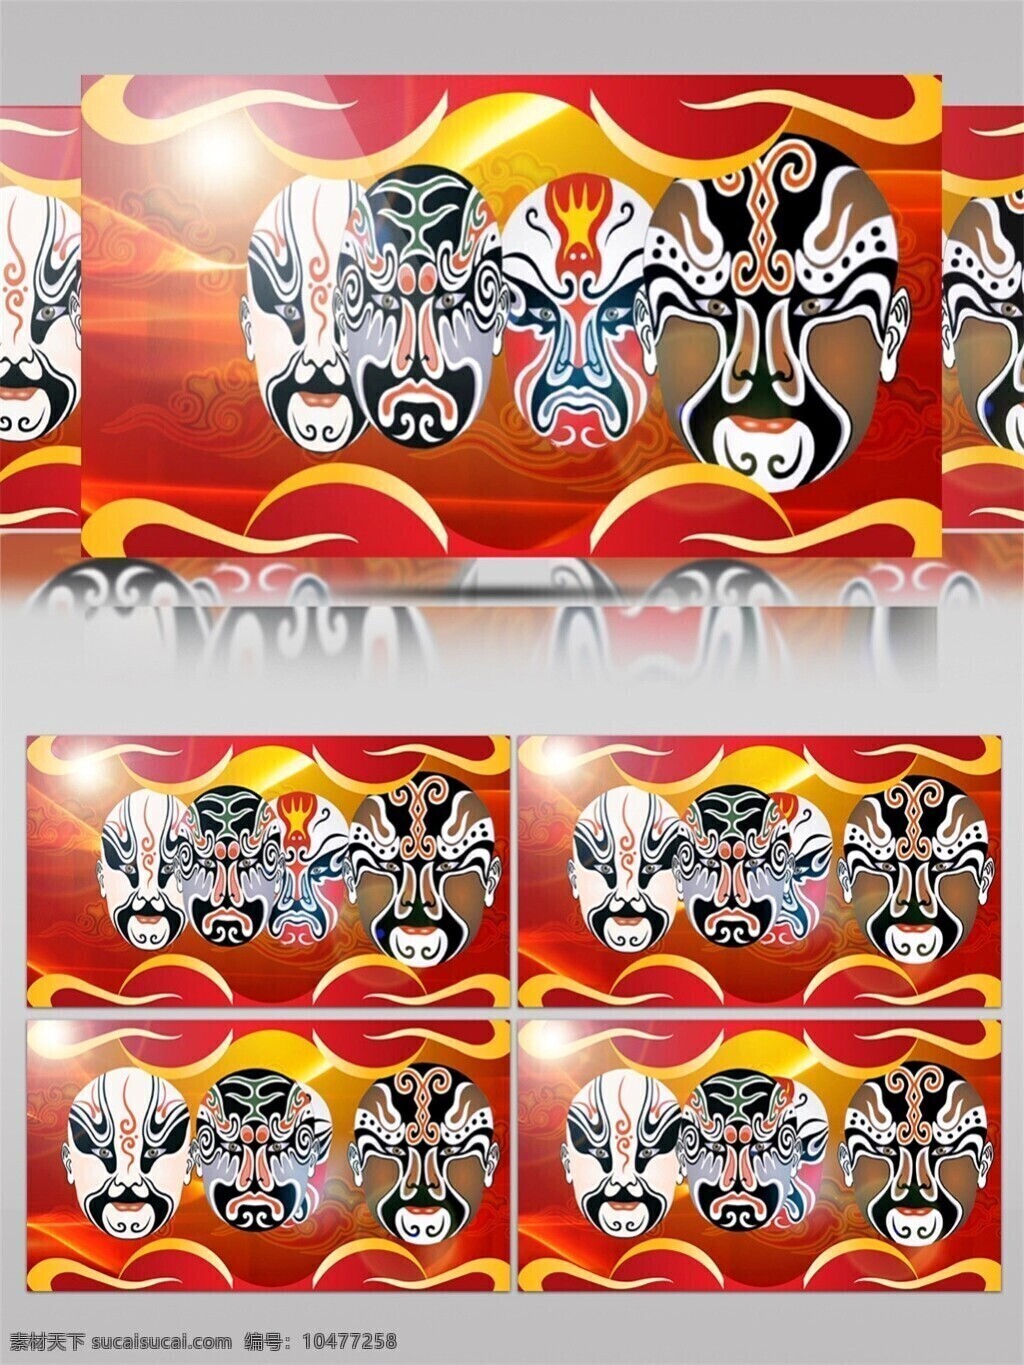 戏剧 脸谱 视频 艺术 文化 京剧 手机壁纸 中国 喜剧 视觉享受 电脑屏幕保护